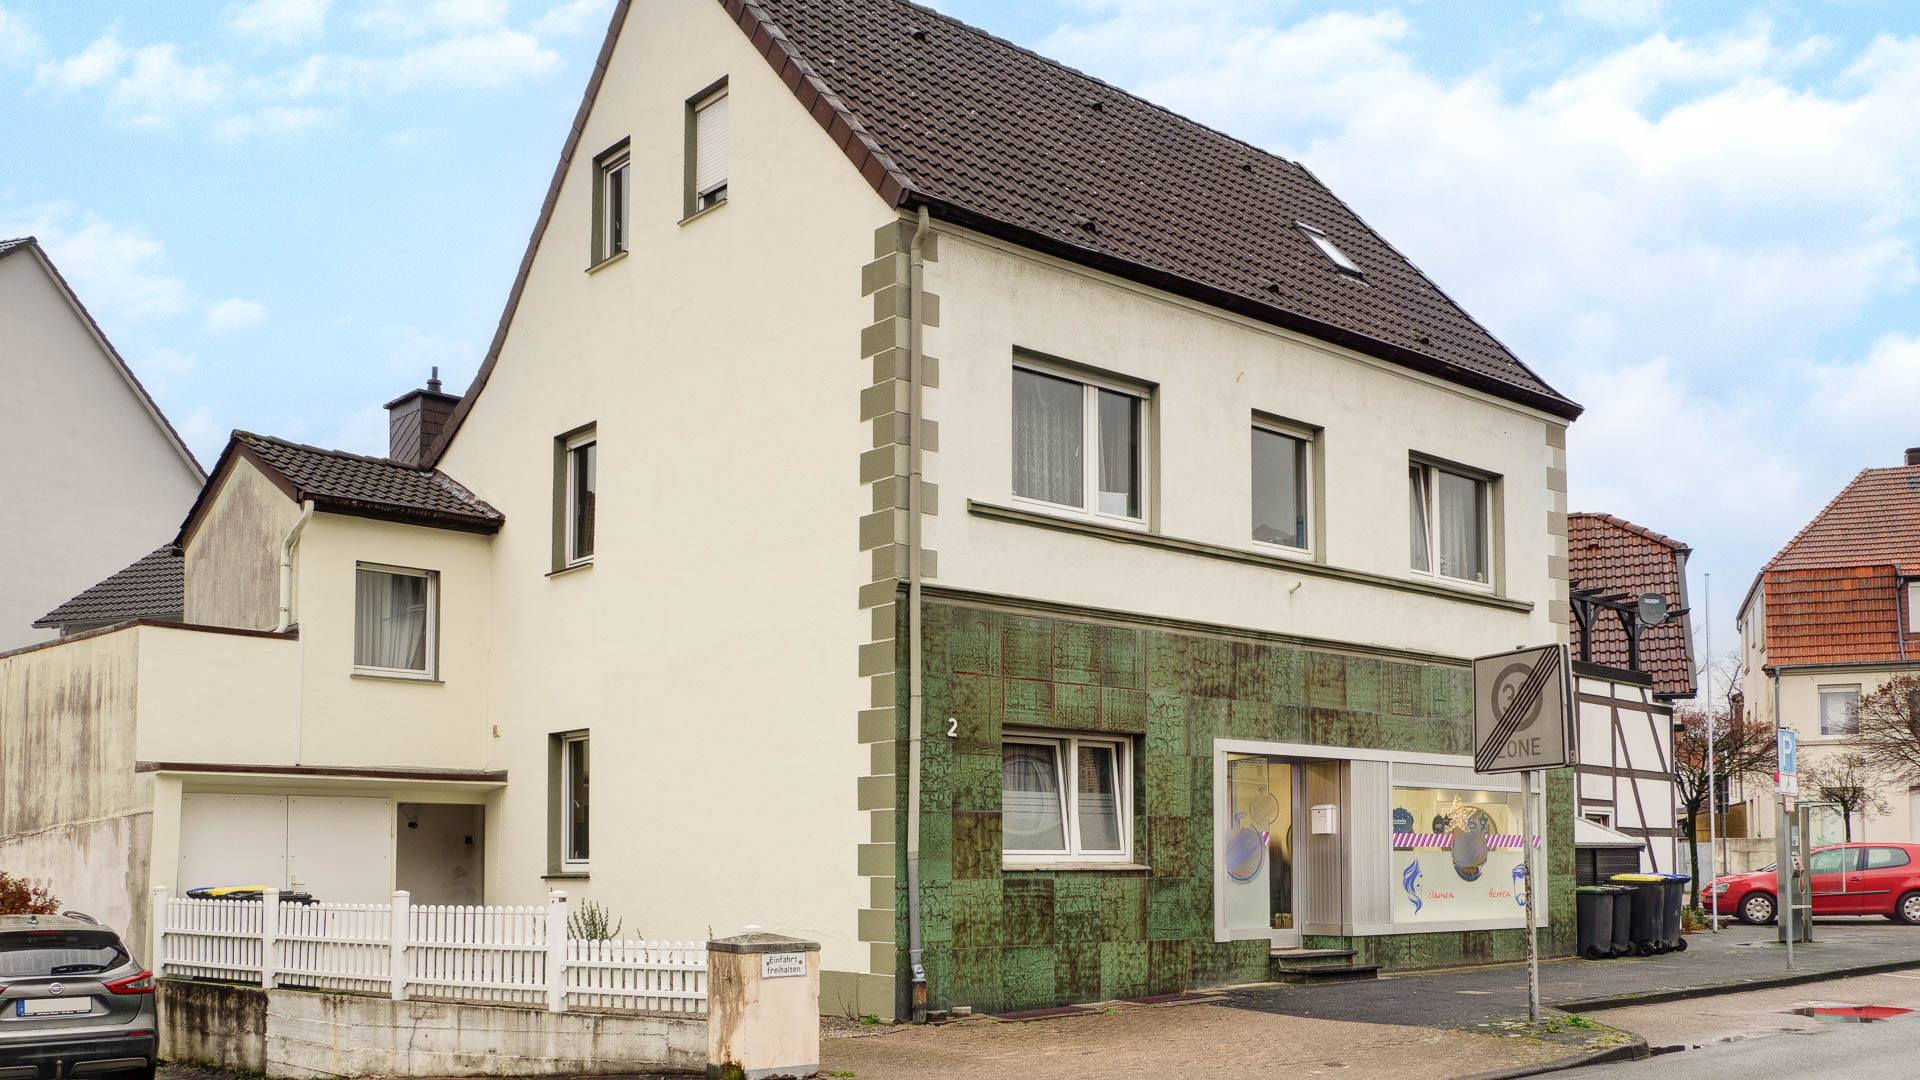 Thater Immobilien GmbH - Immobilienangebot - Bad Lippspringe - Häuser - 5835 | Haus zu kaufen in 33175 Bad Lippspringe